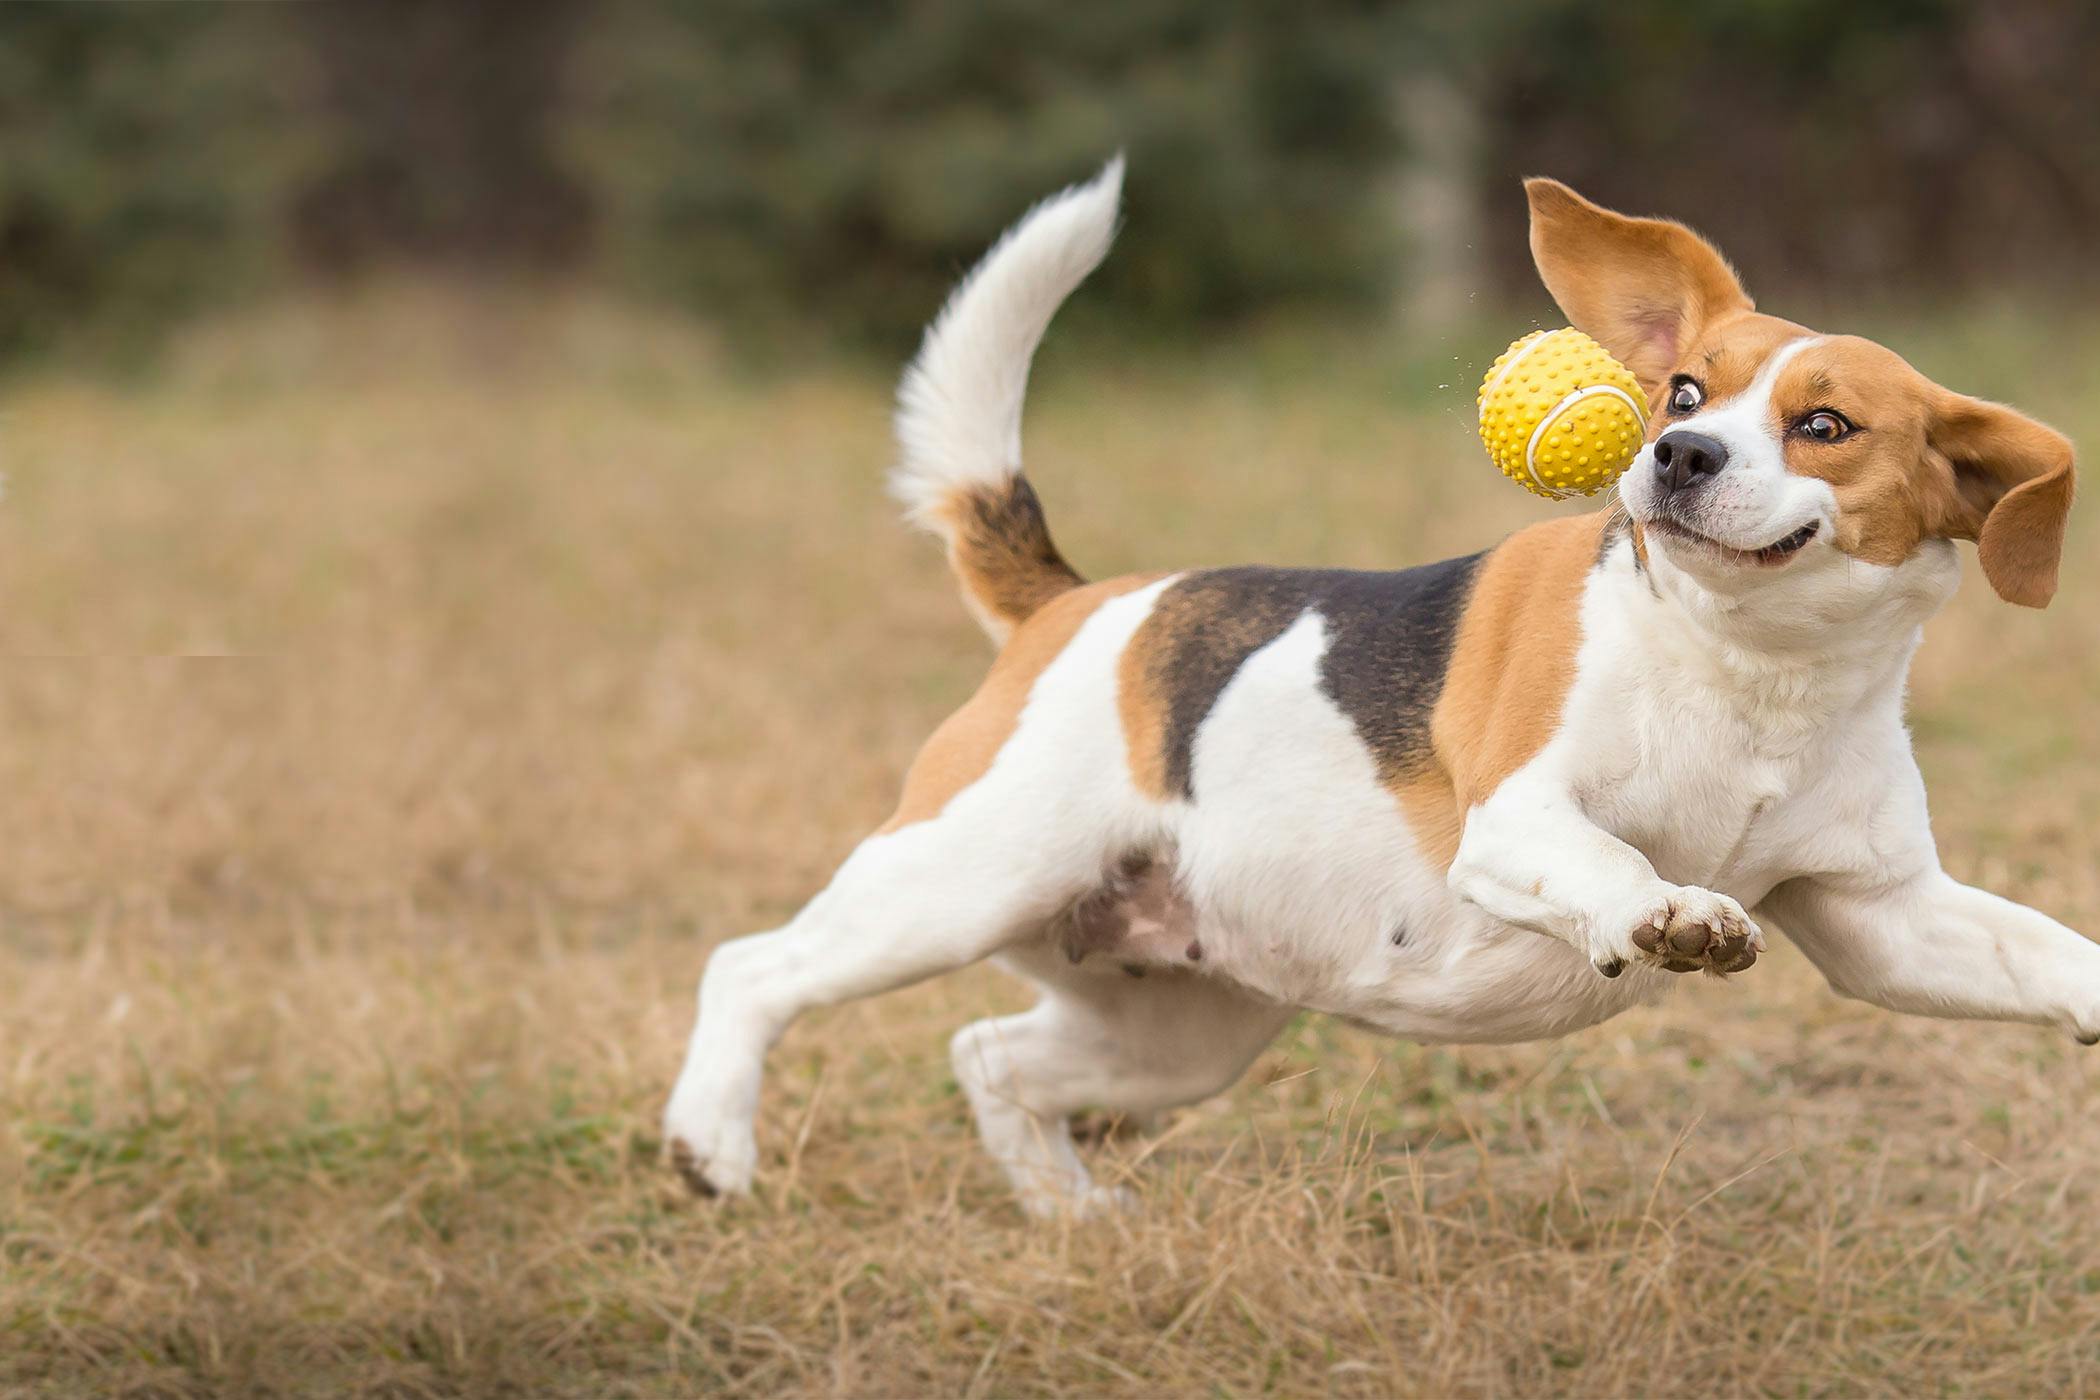 do beagles like to play?